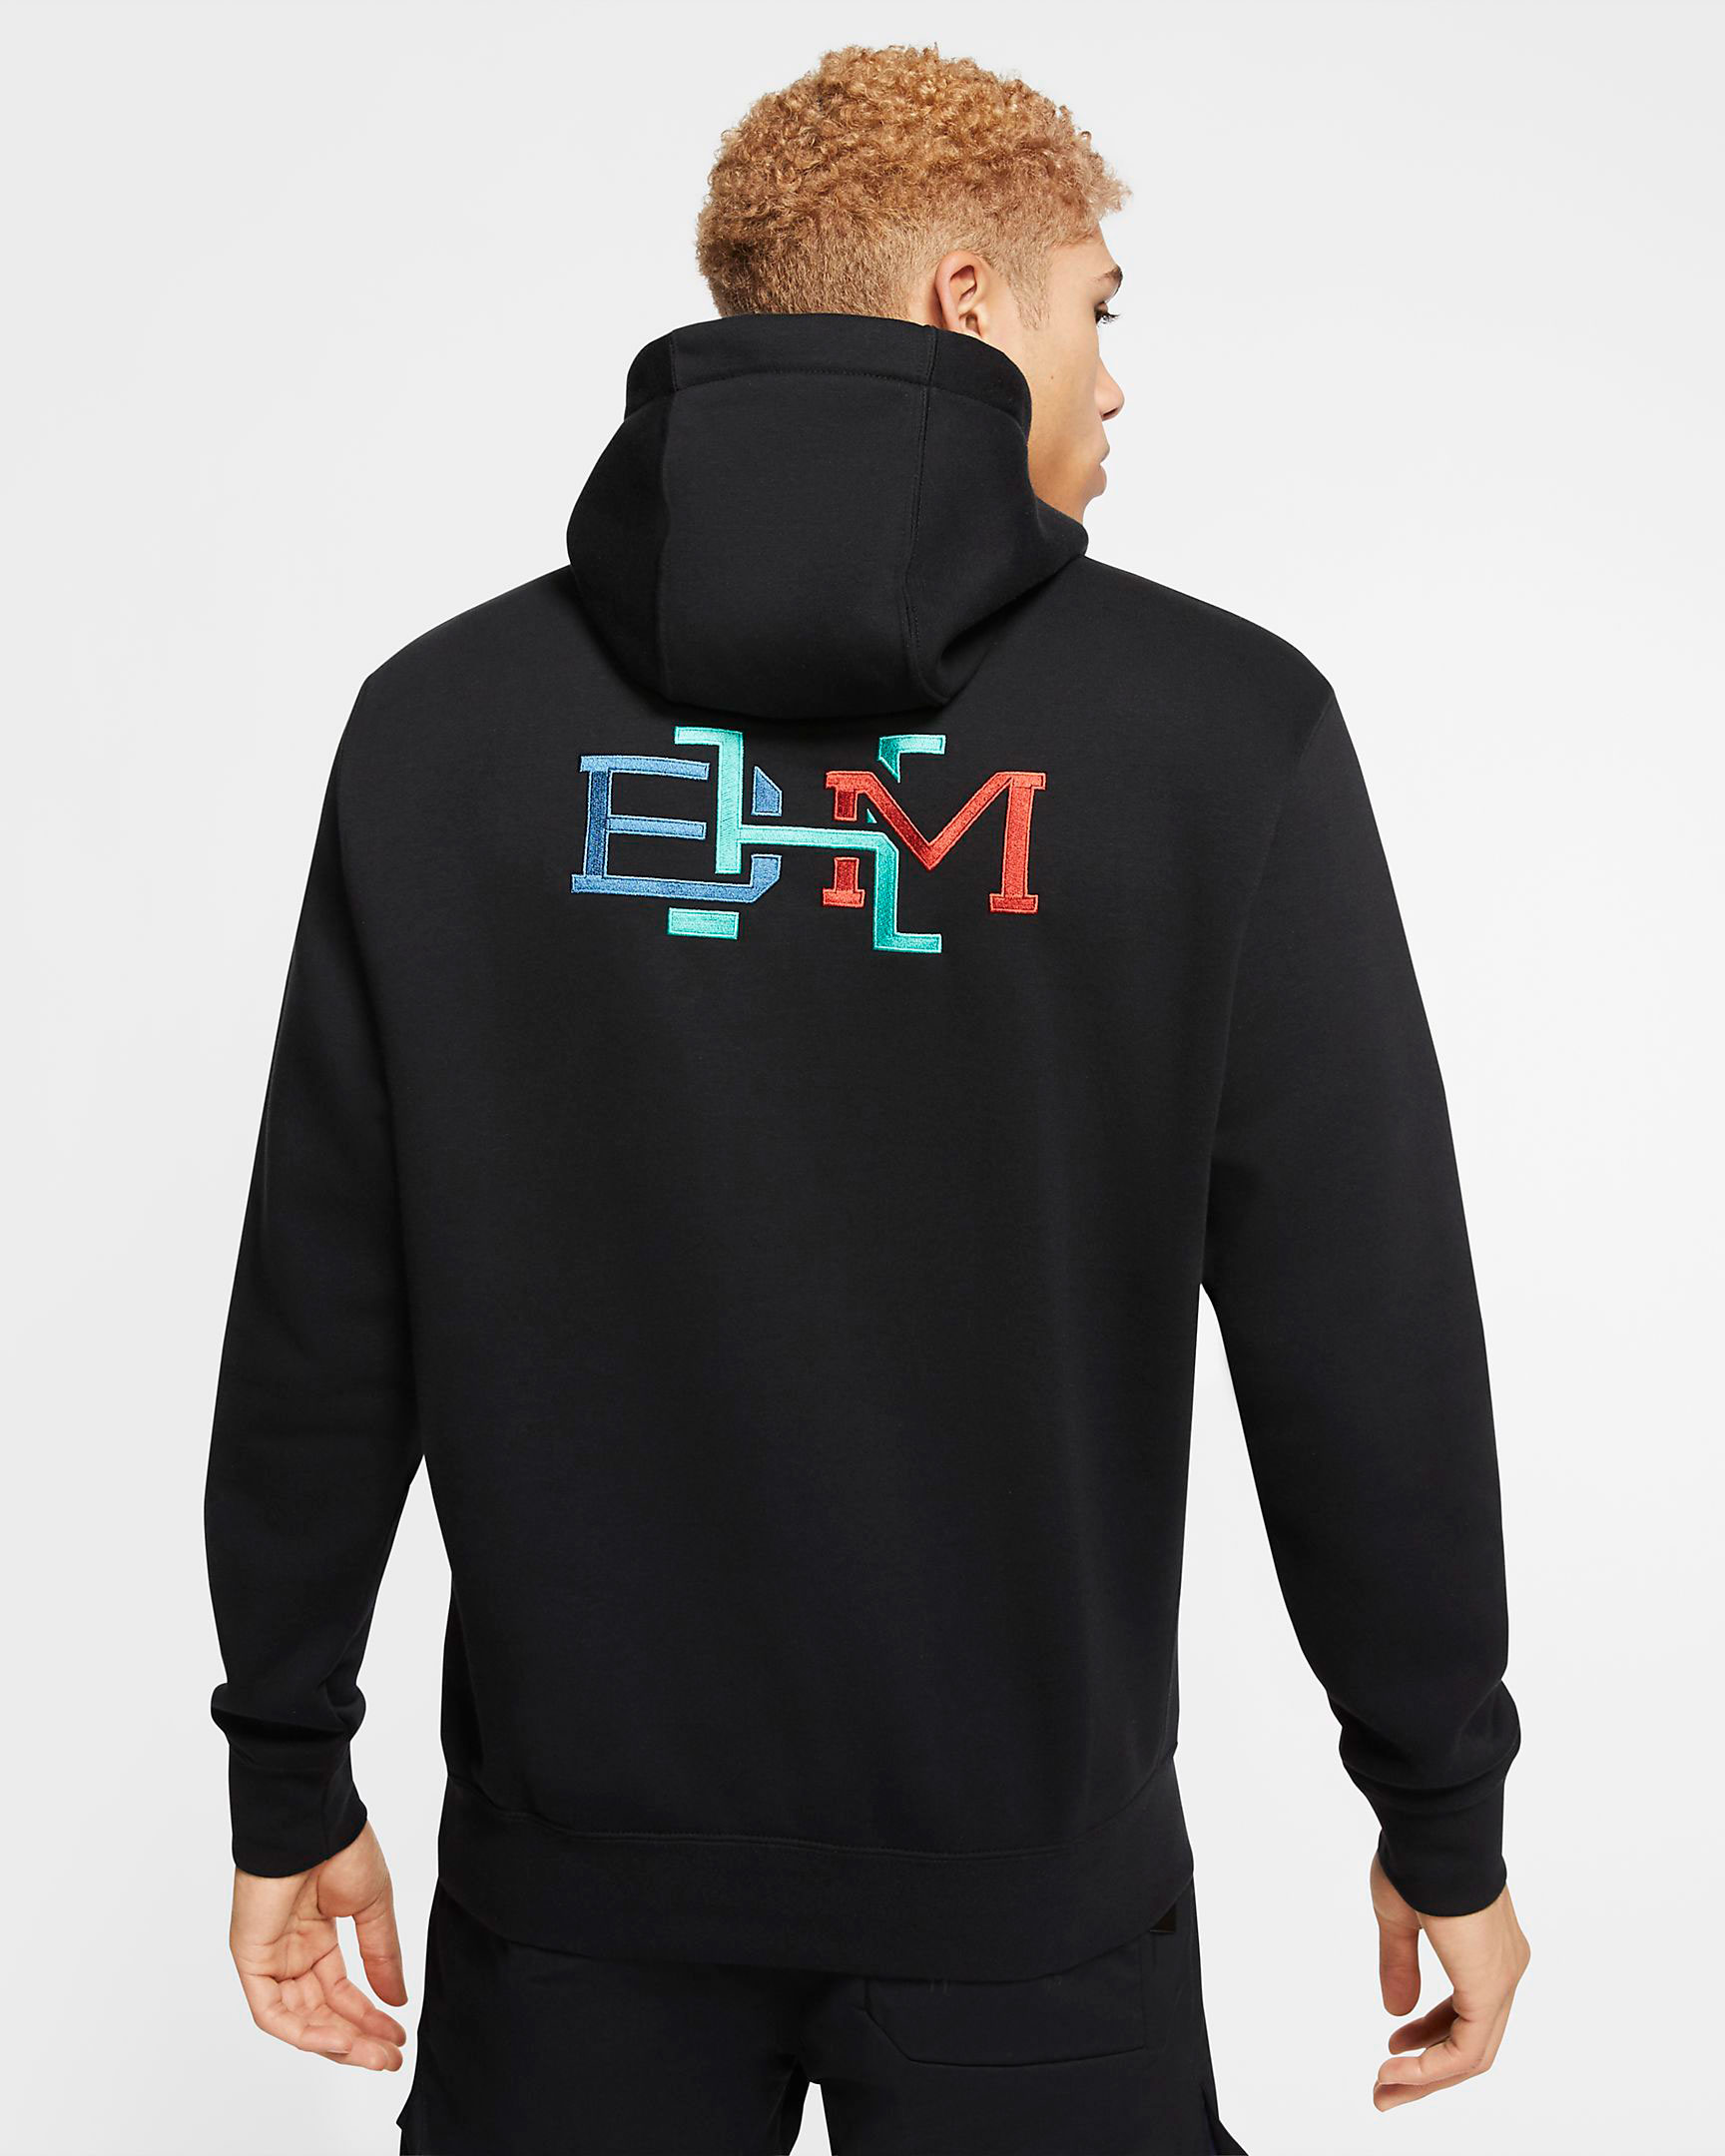 nike-bhm-2020-black-history-month-hoodie-2